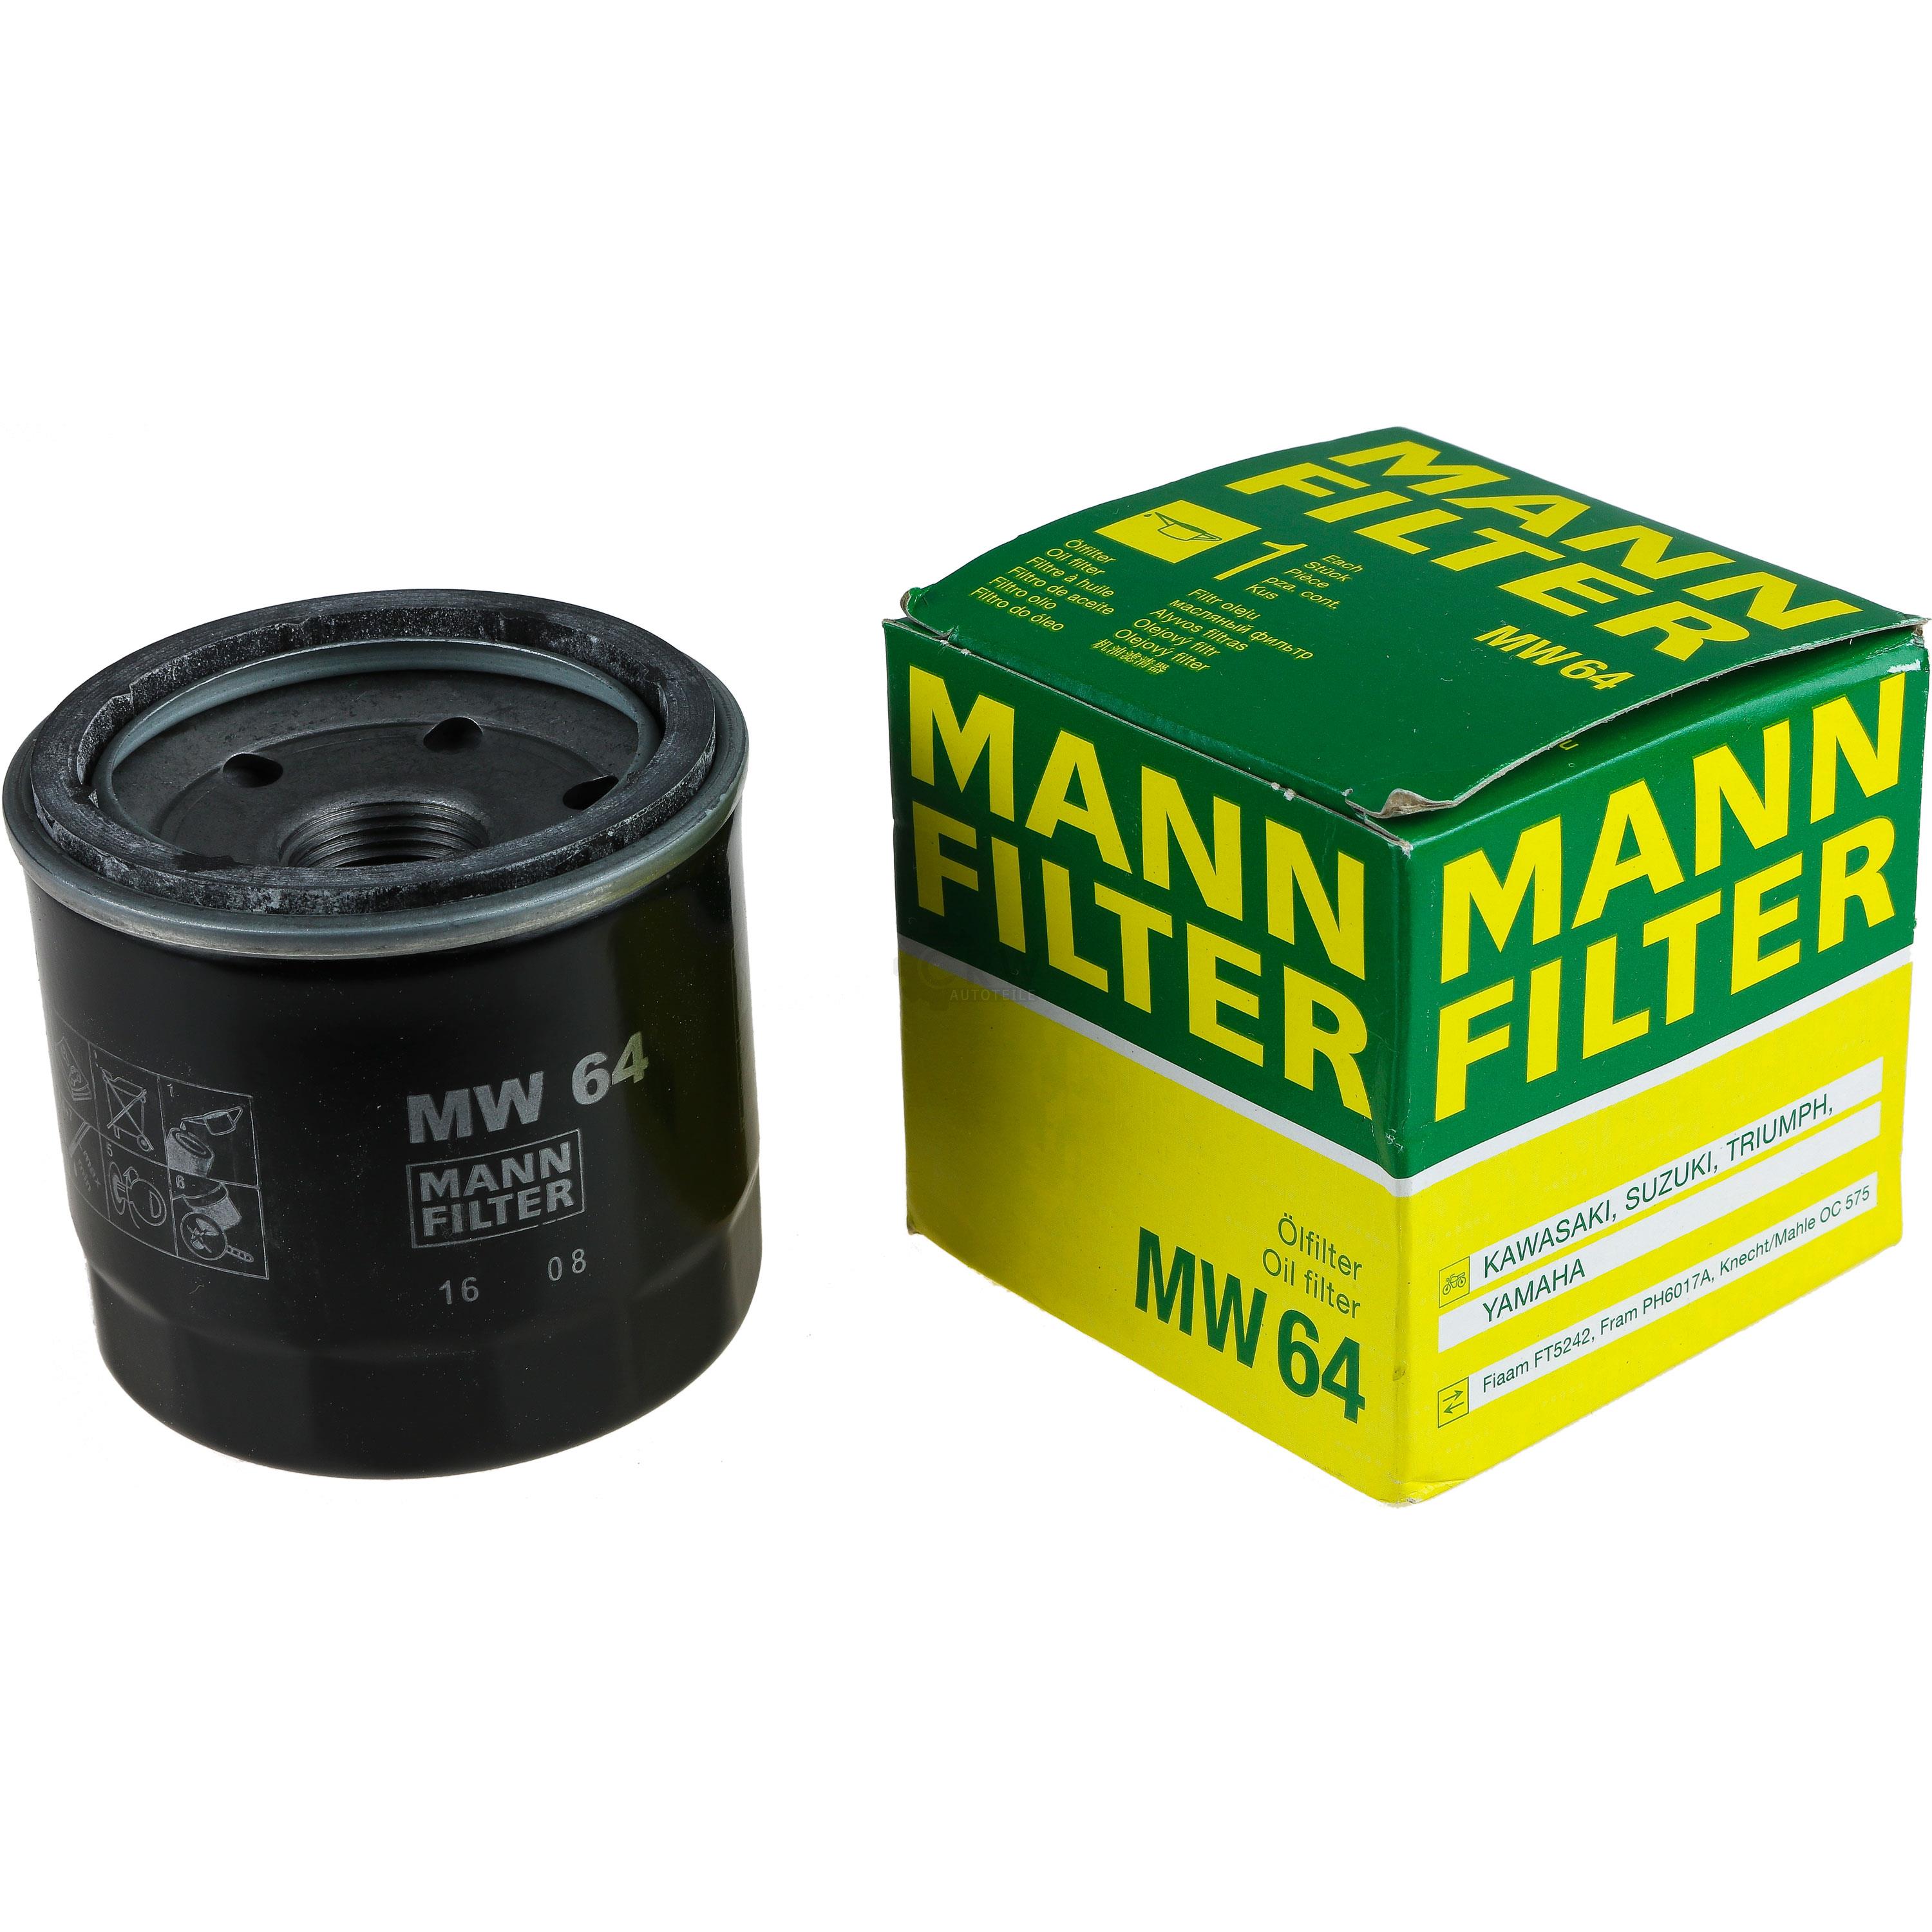 MANN-FILTER Ölfilter MW 64 Oil Filter